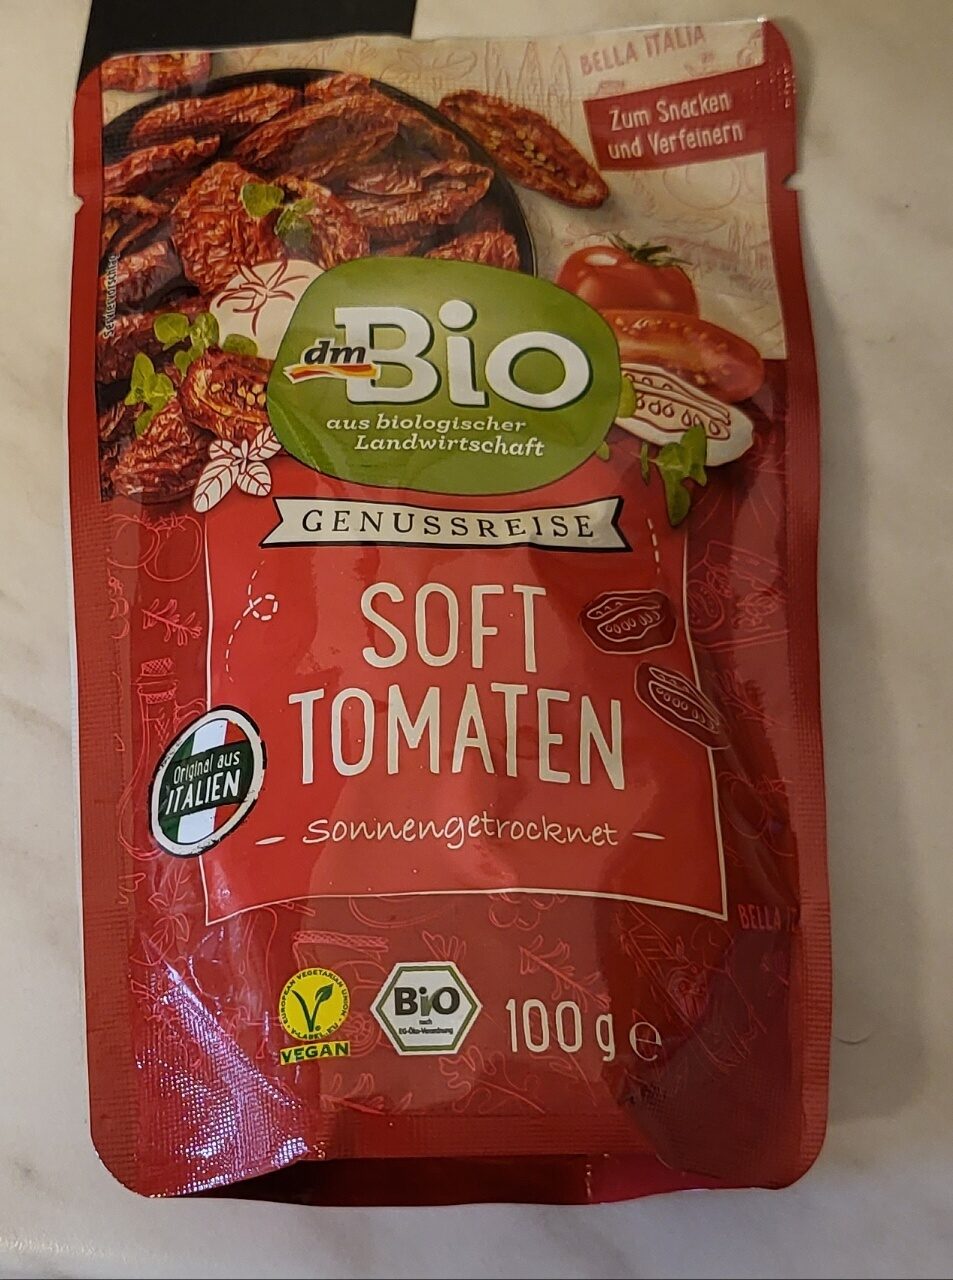 Soft Tomaten - Product - de